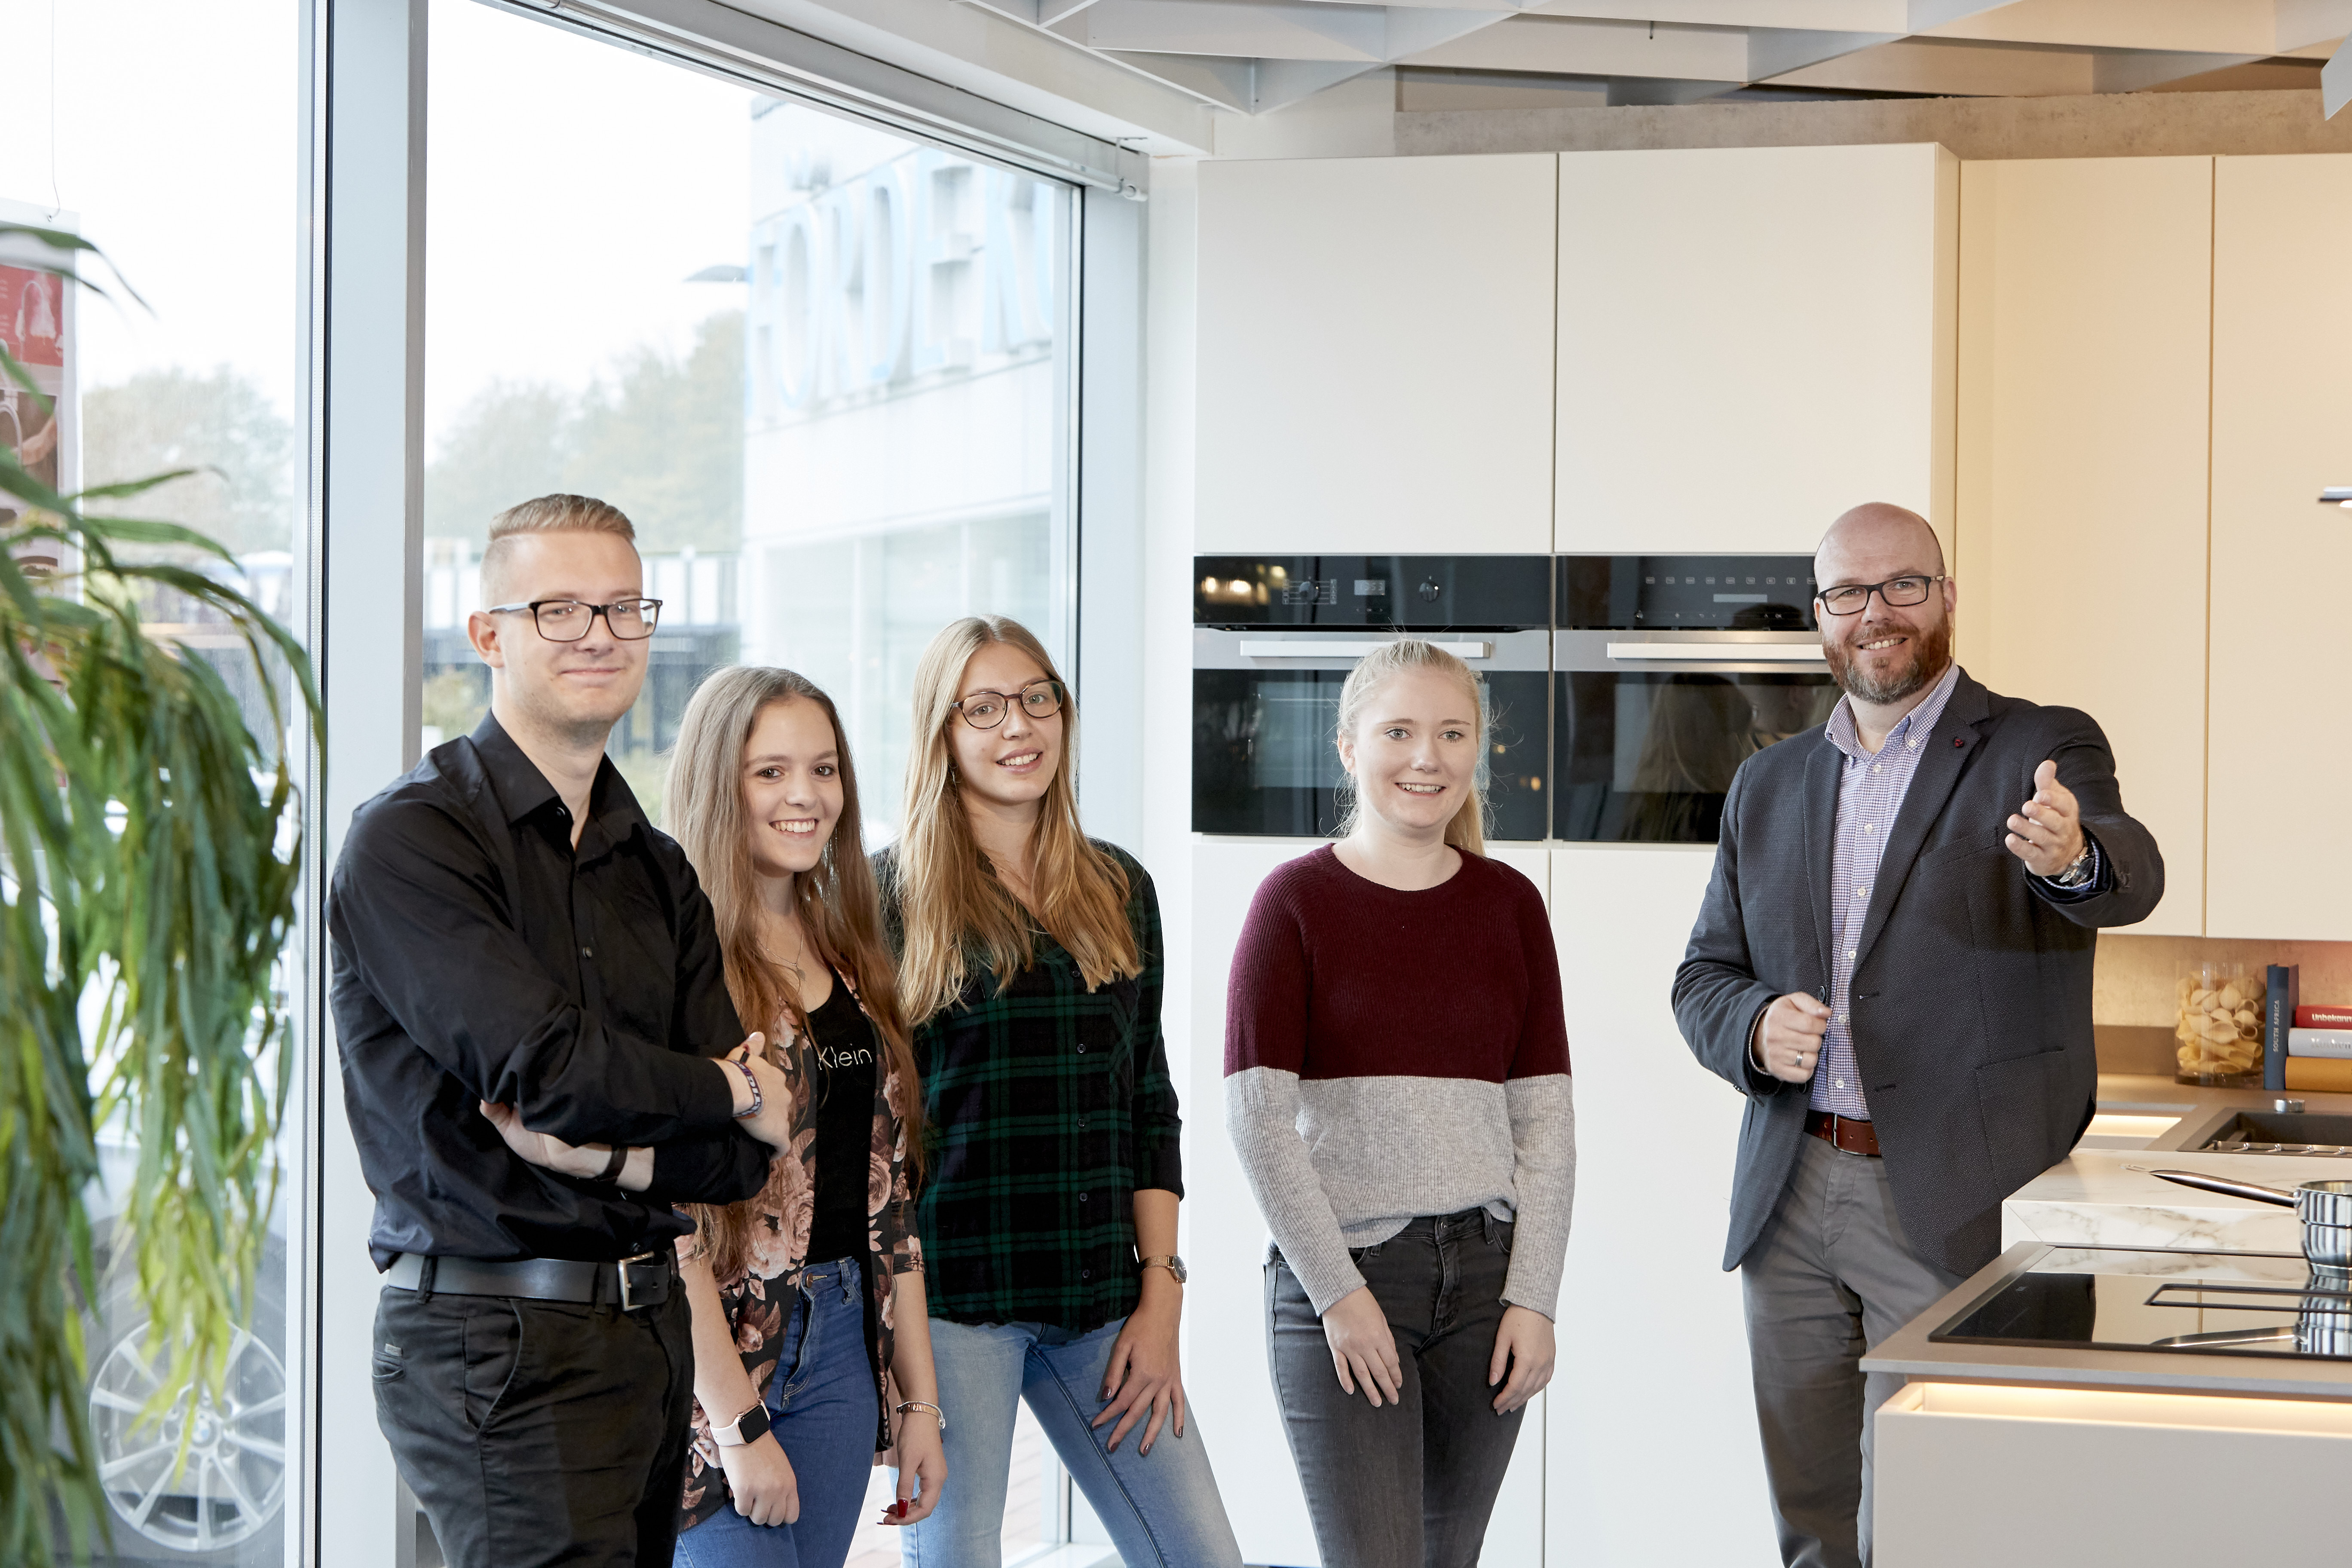 Auf diesem Bild sieht man 4 Auszubildende und einen Ausbilder in der Flensburger Förde-Küchen Filiale. Sie stehen gemeinsam in einer Einbauküche und freuen sich über den Fototermin.